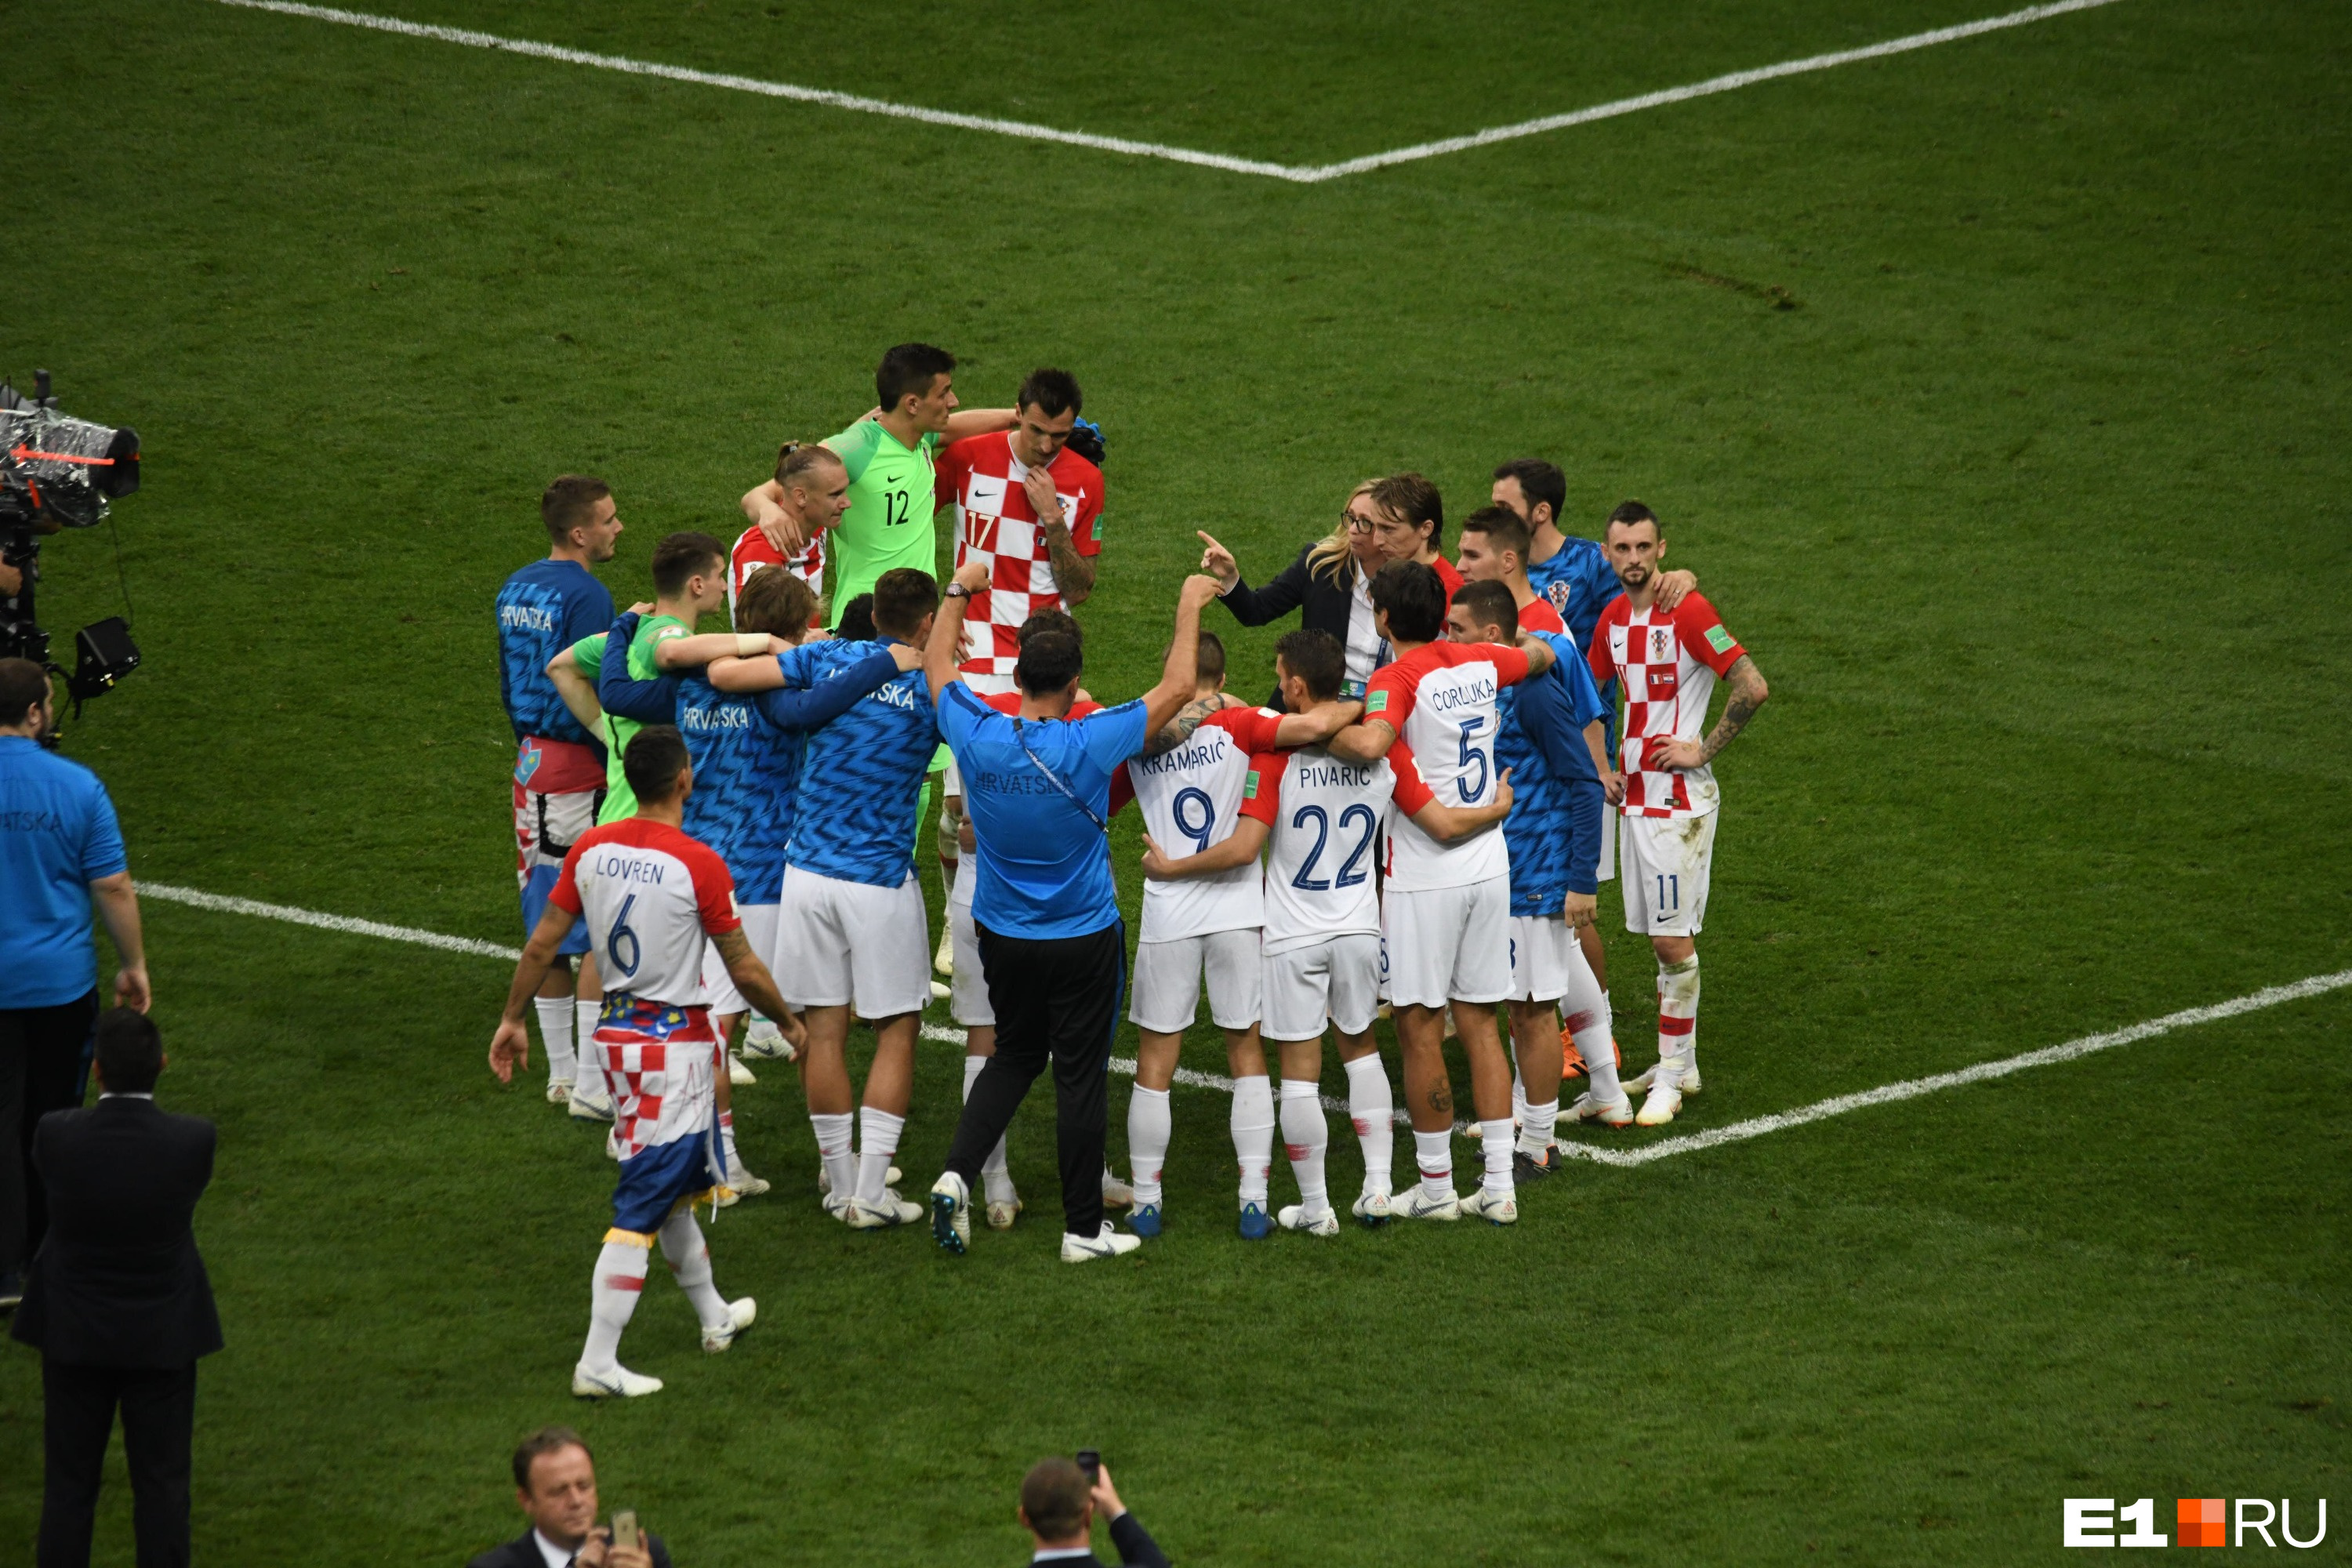 Сила хорватов в том, что они были едины